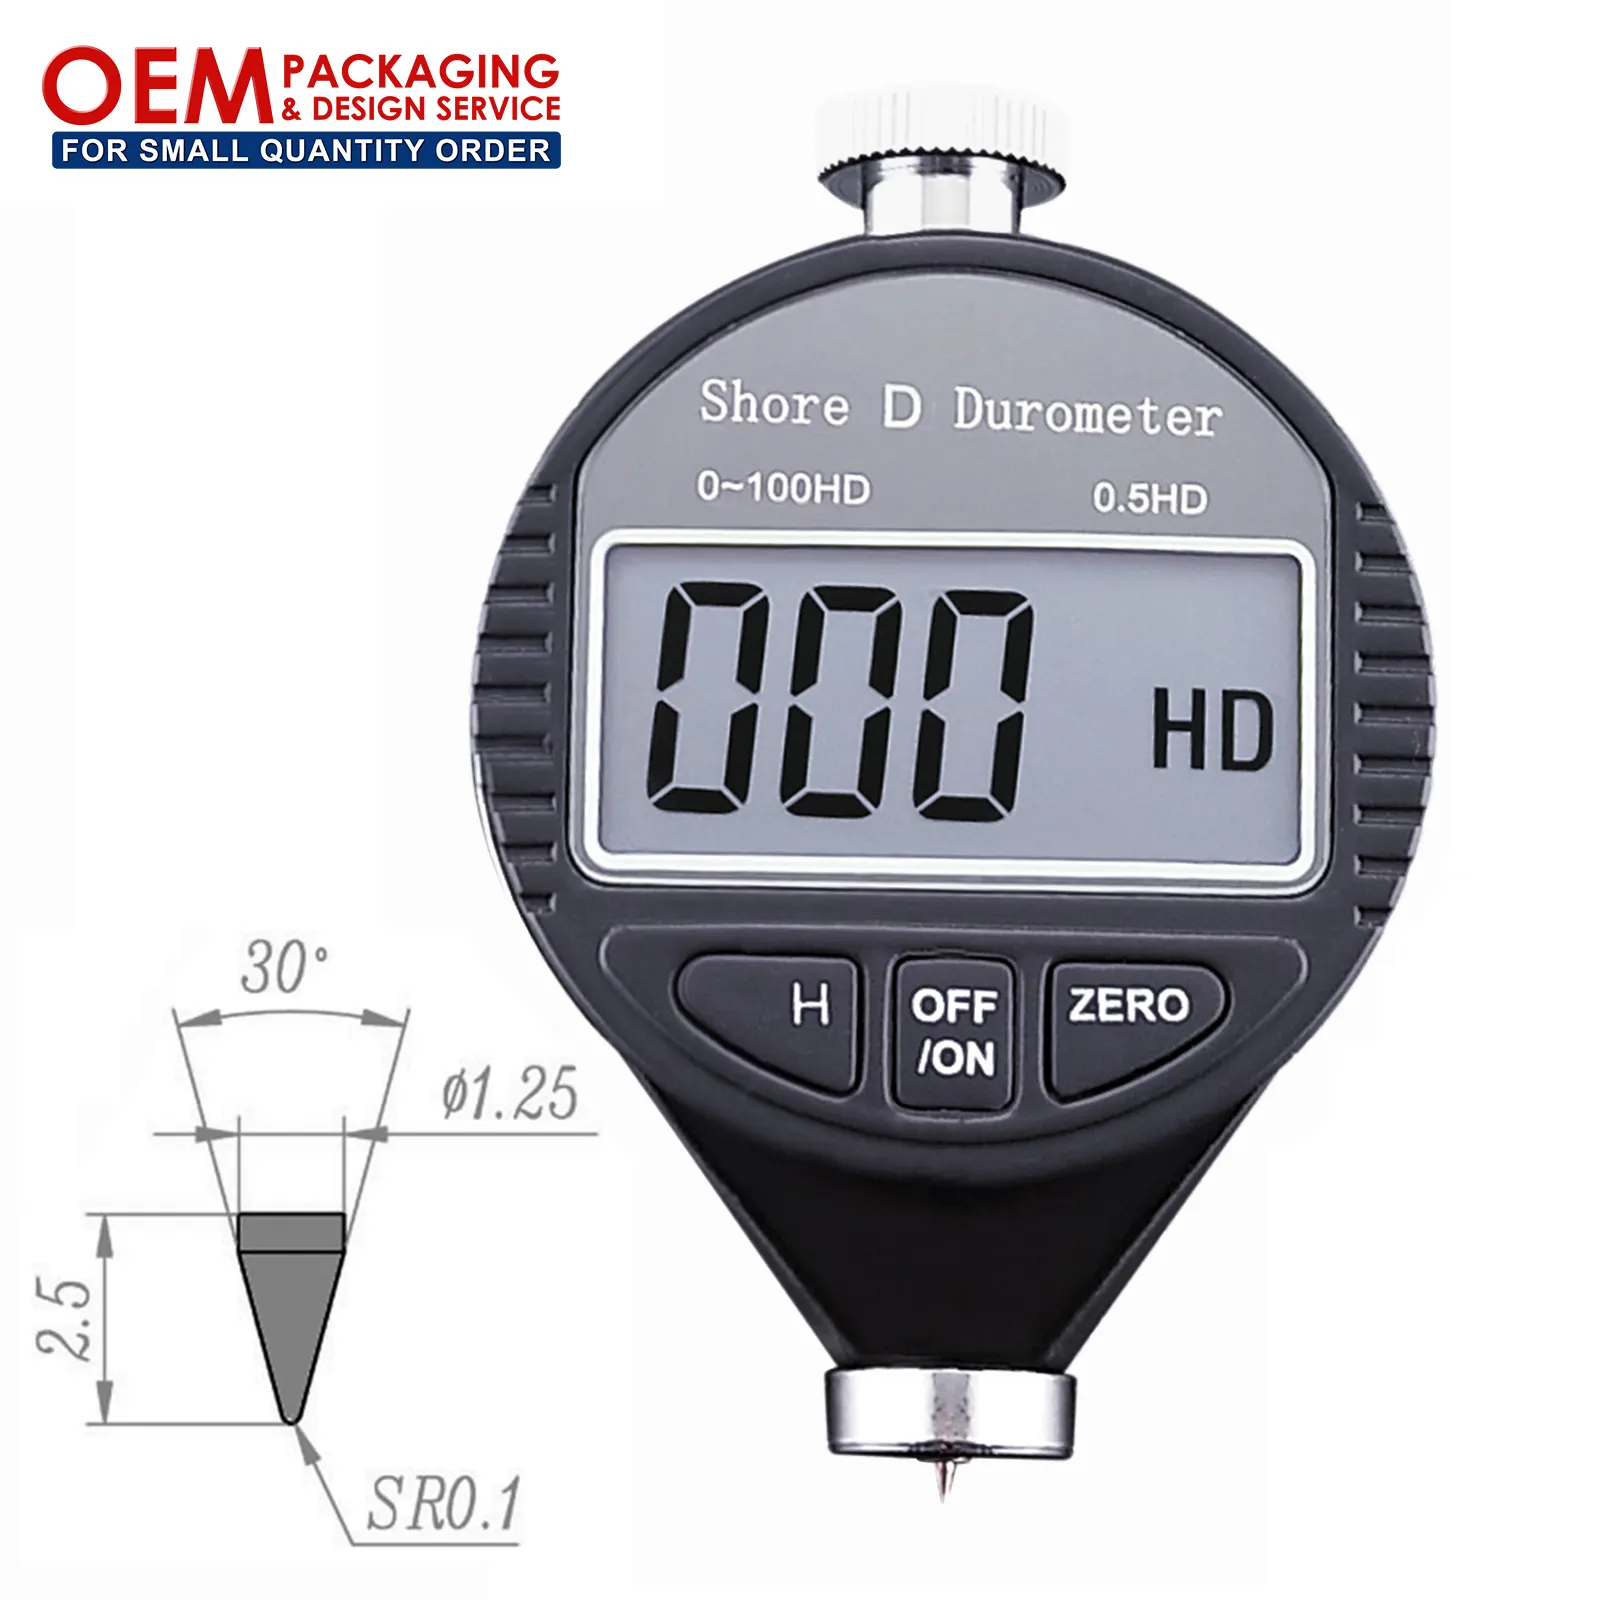 Testador de alcance digital de 0 ~ 100hd, medidor de durômetro de plástico da borracha da haste d de auto calibração (disponível para embalagem oem)